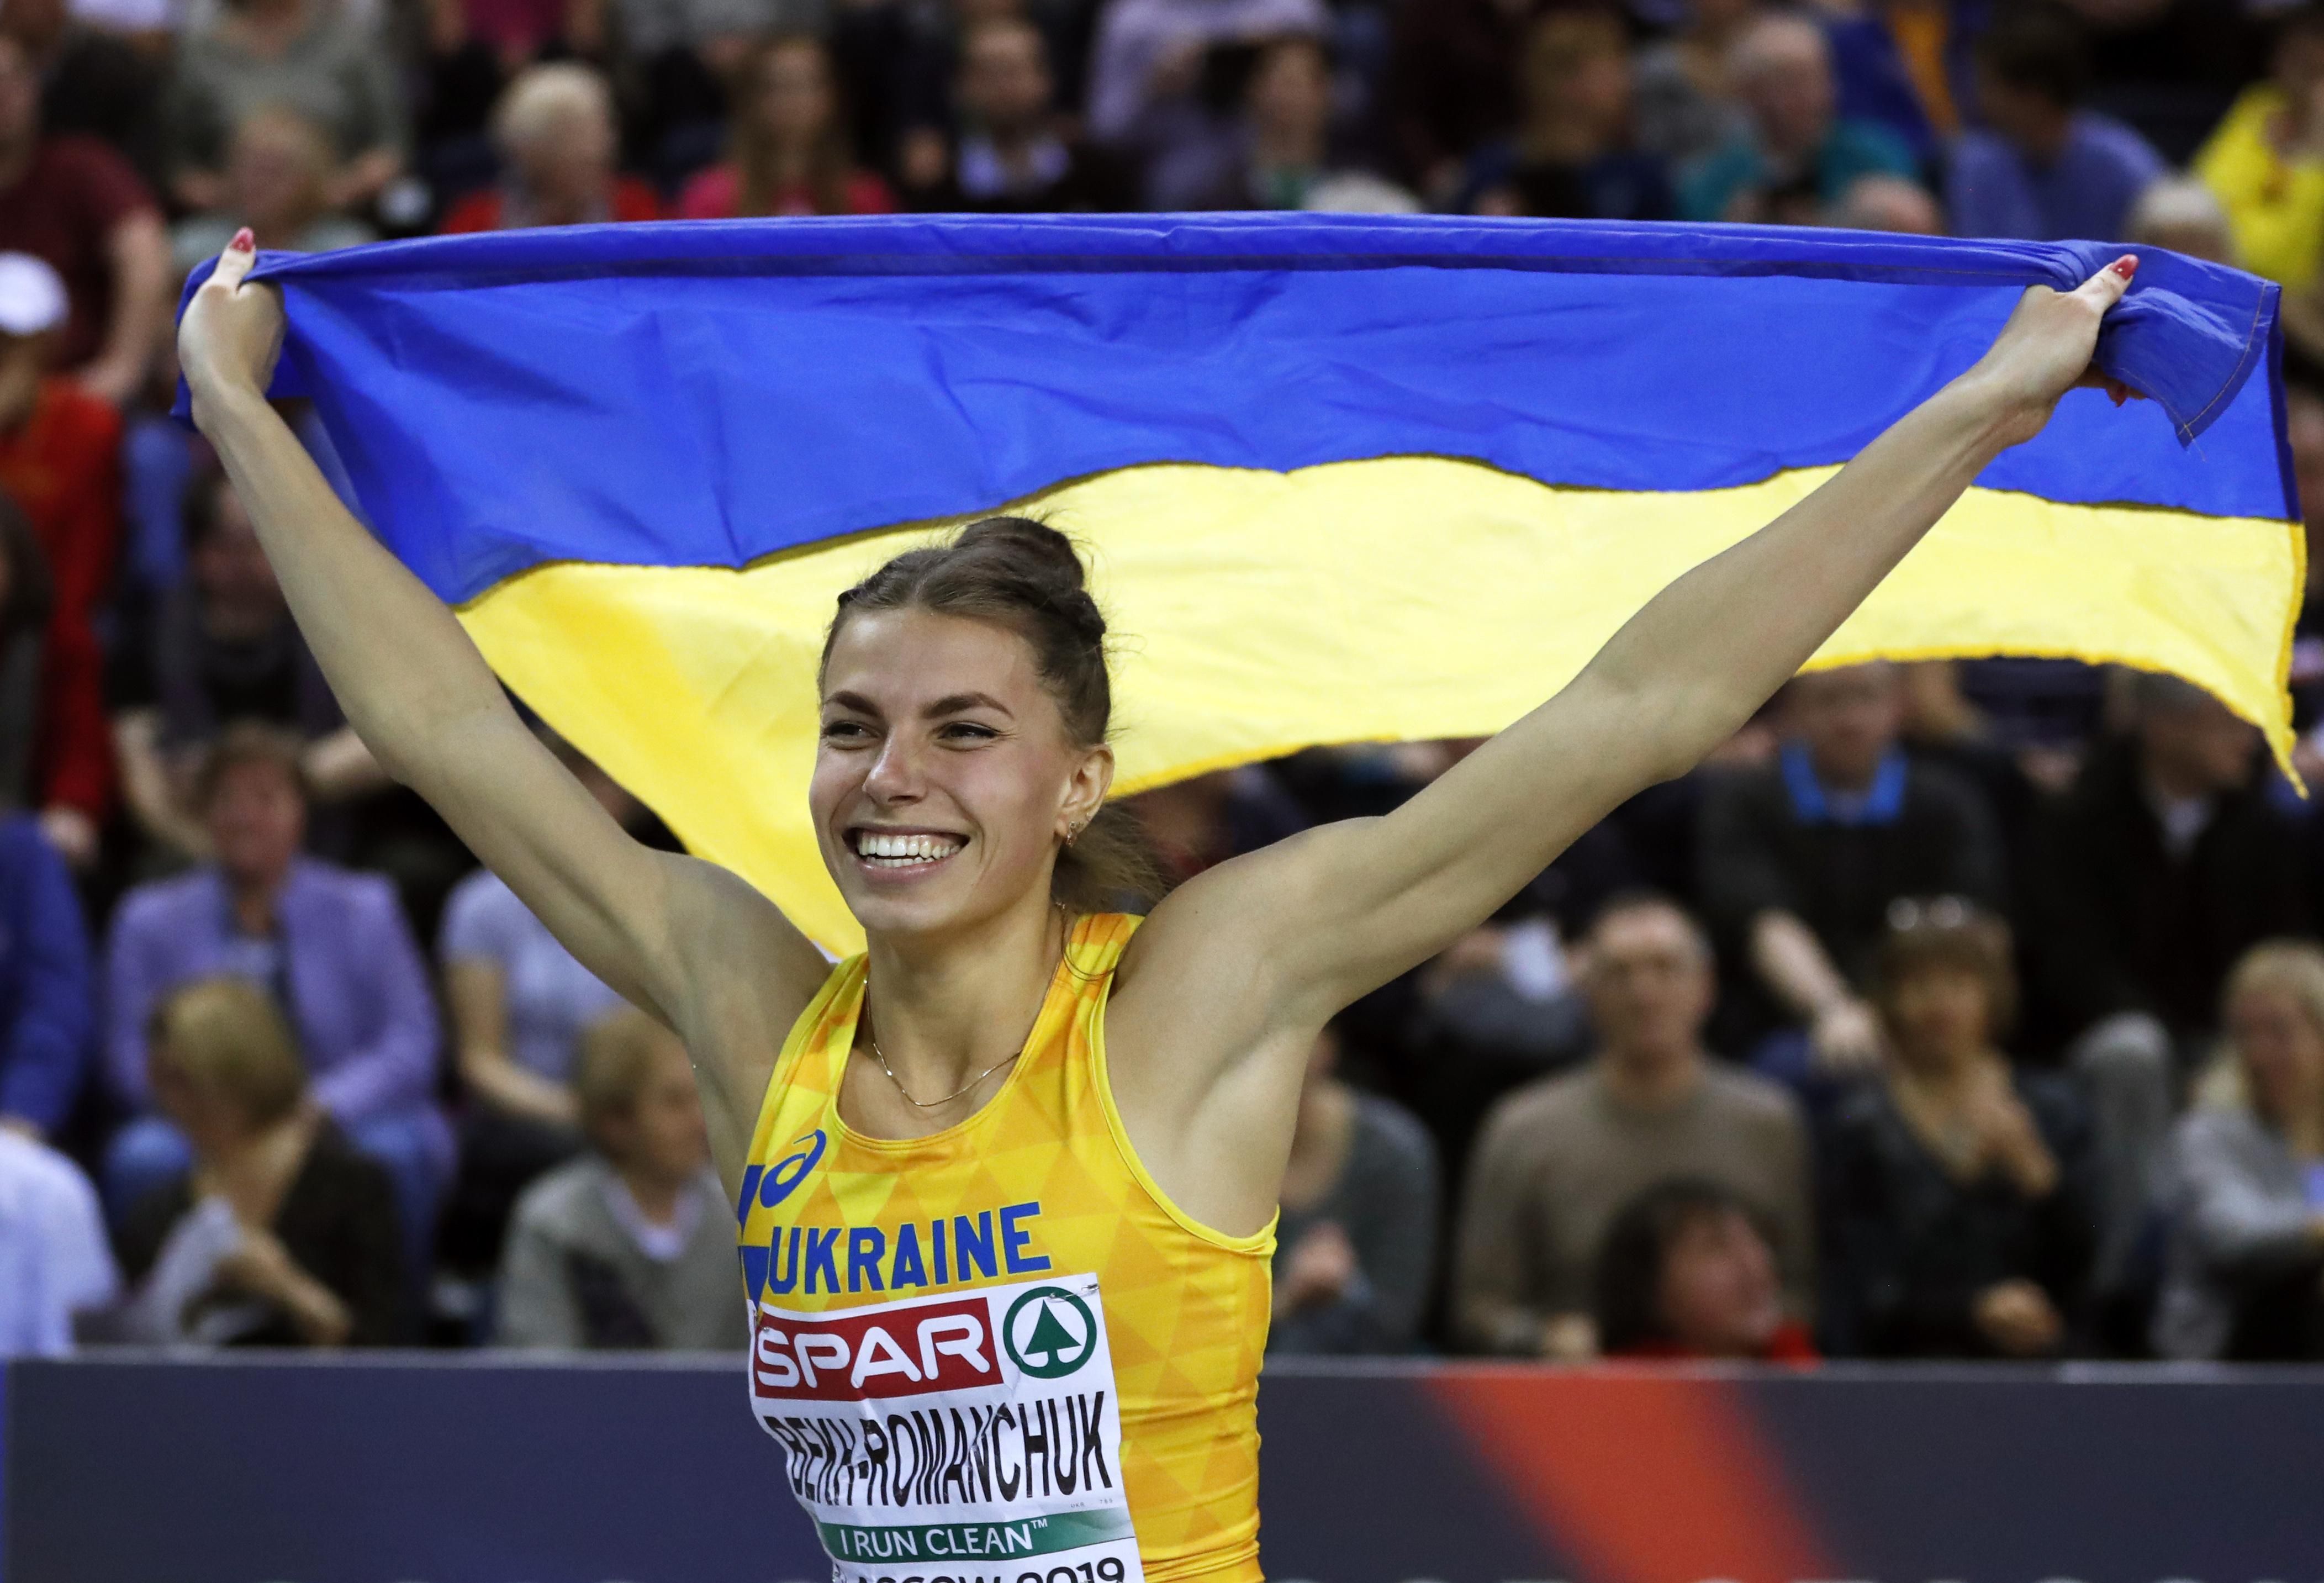 Бех-Романчук выиграла "серебро" на первых престижных соревнованиях после карантина